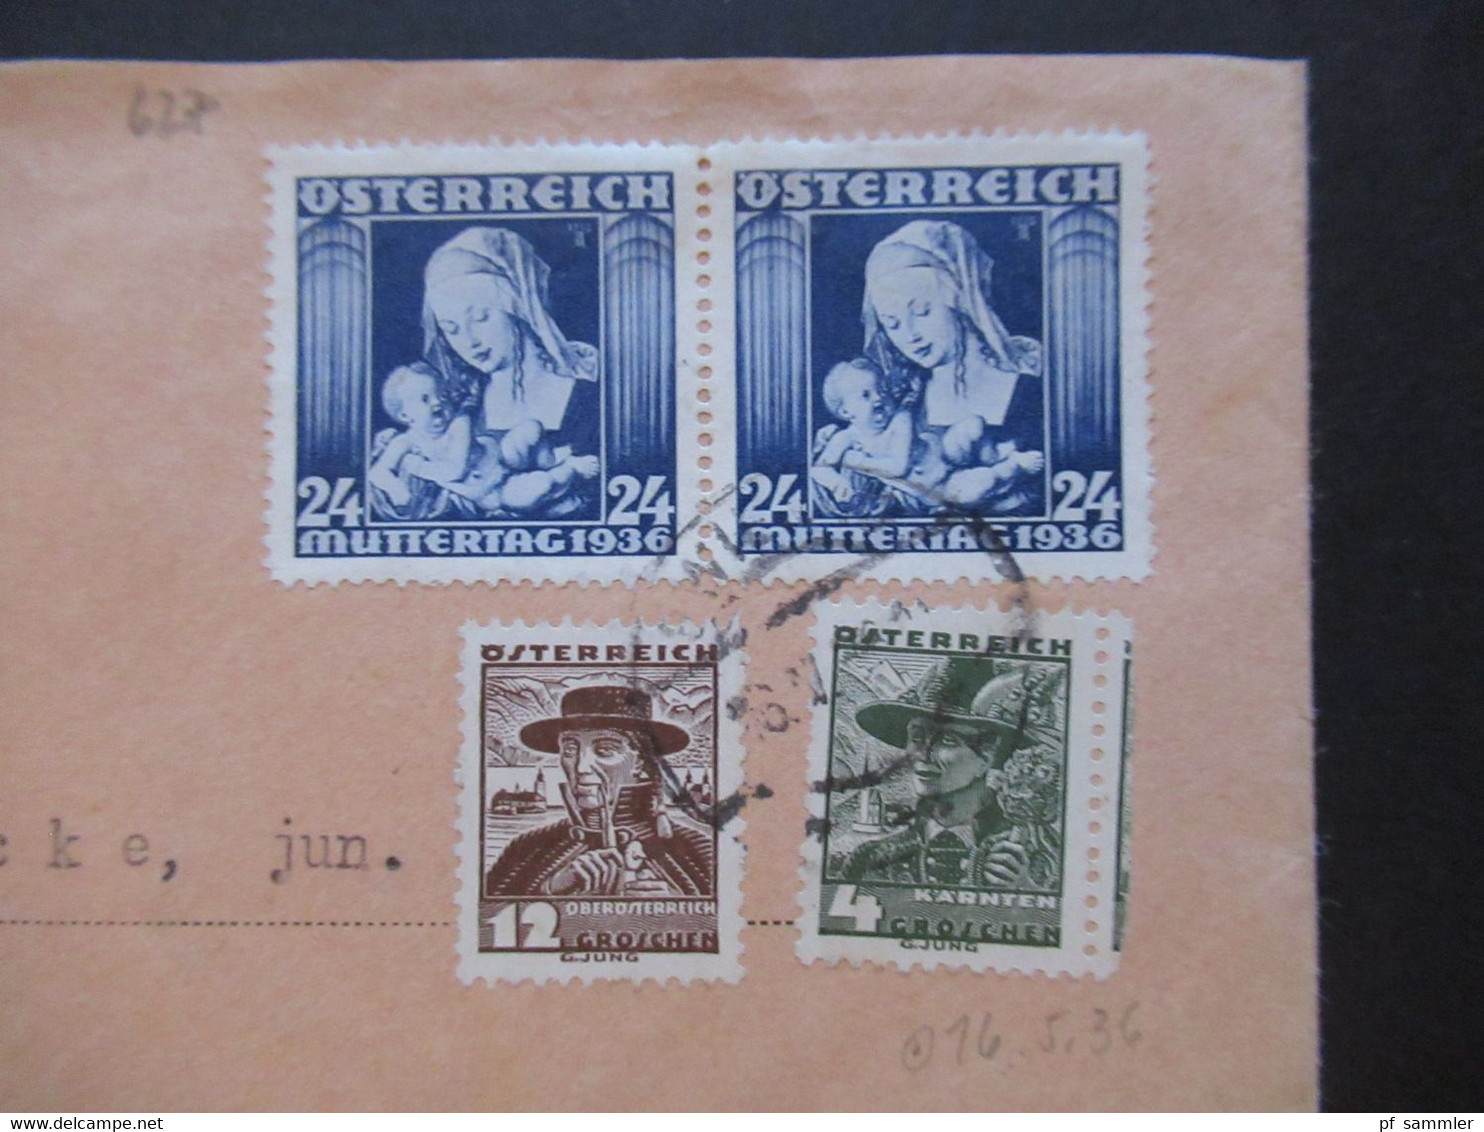 Österreich 1936 Einschreiben Wien 40 Joh. Fellerer Nach Epe In Westfalen Zensurstreifen Devisenüberwachung Geöffnet - Covers & Documents